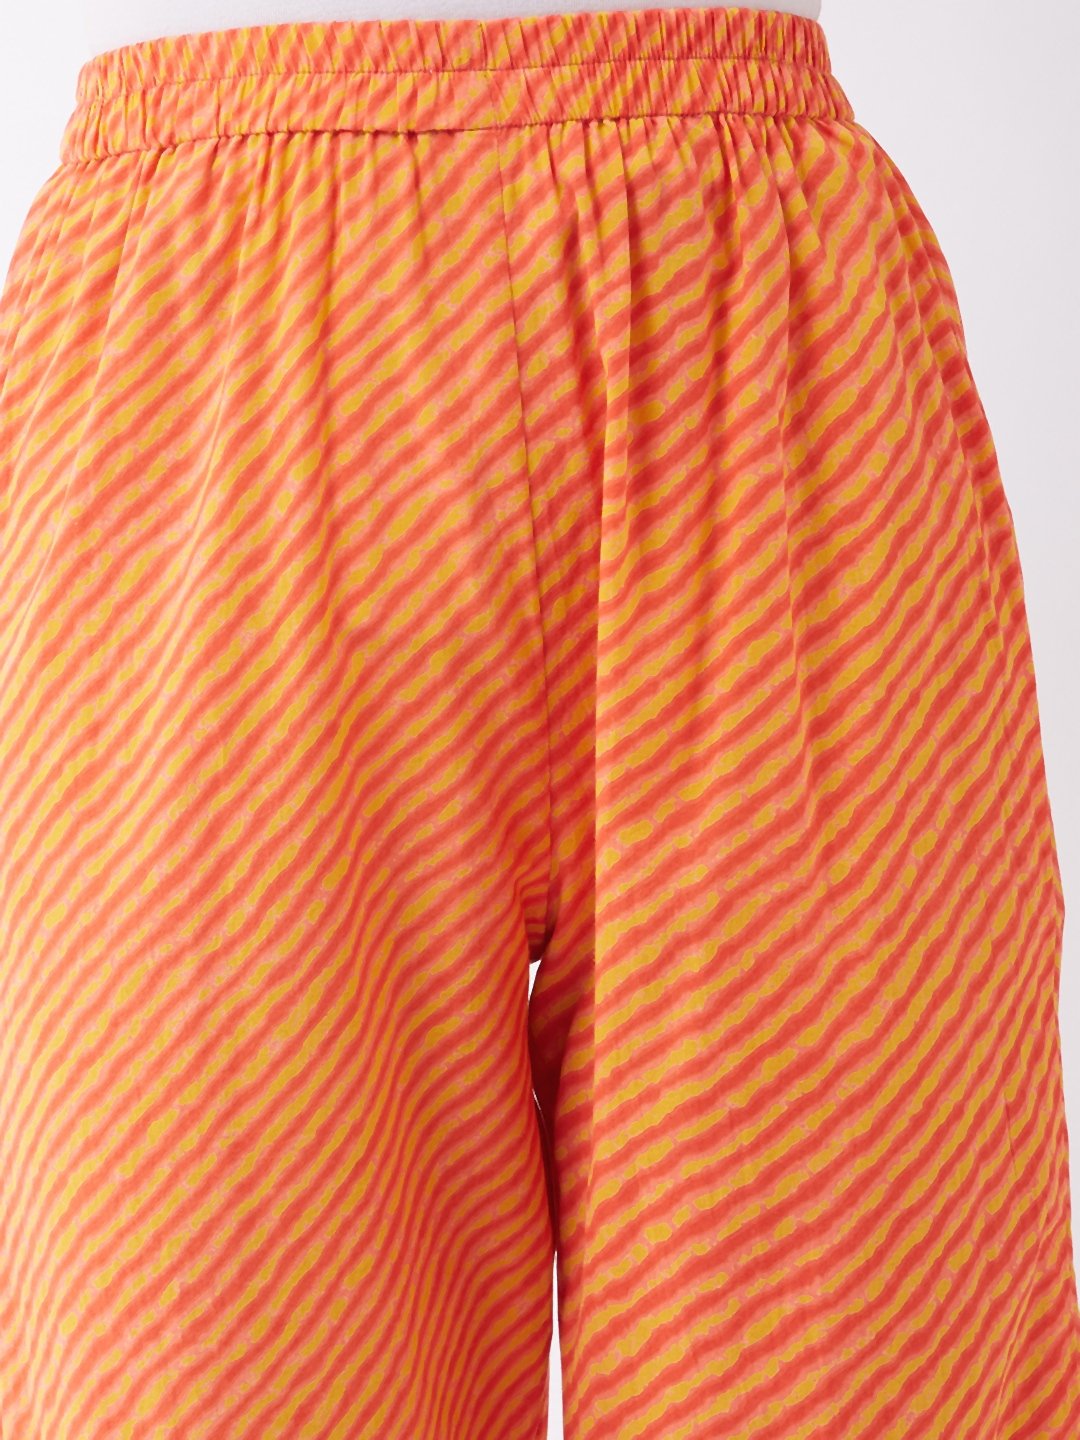 Orange Mustard Lahriya Pant